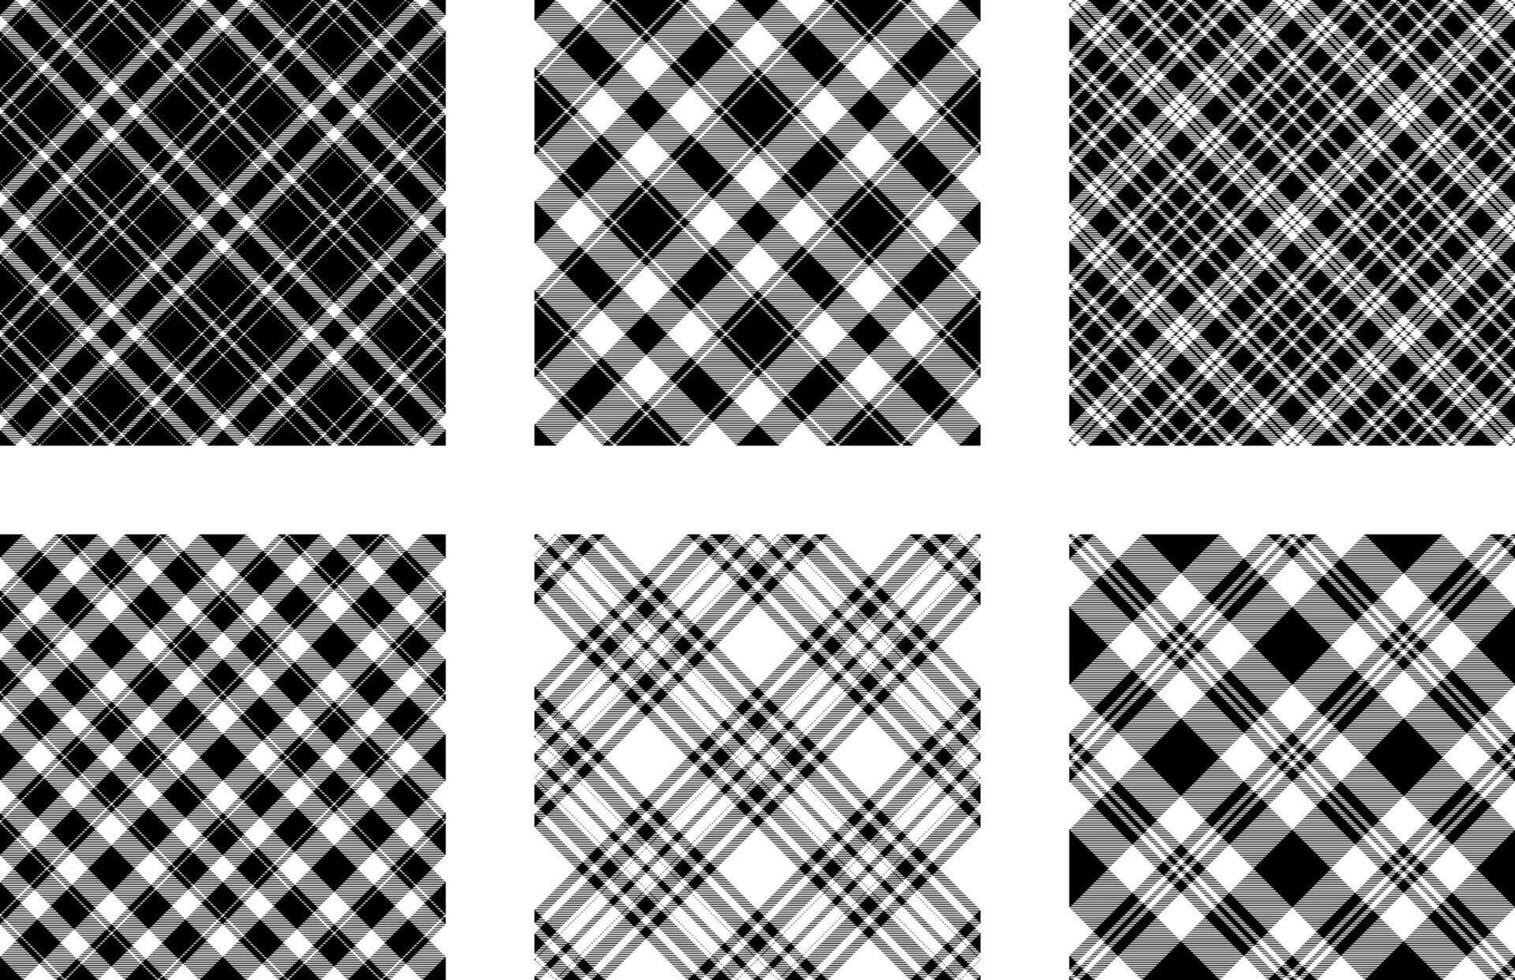 svart och vit sömlös mönster design. uppsättning vektor bakgrund, buffel pläd tyg design.